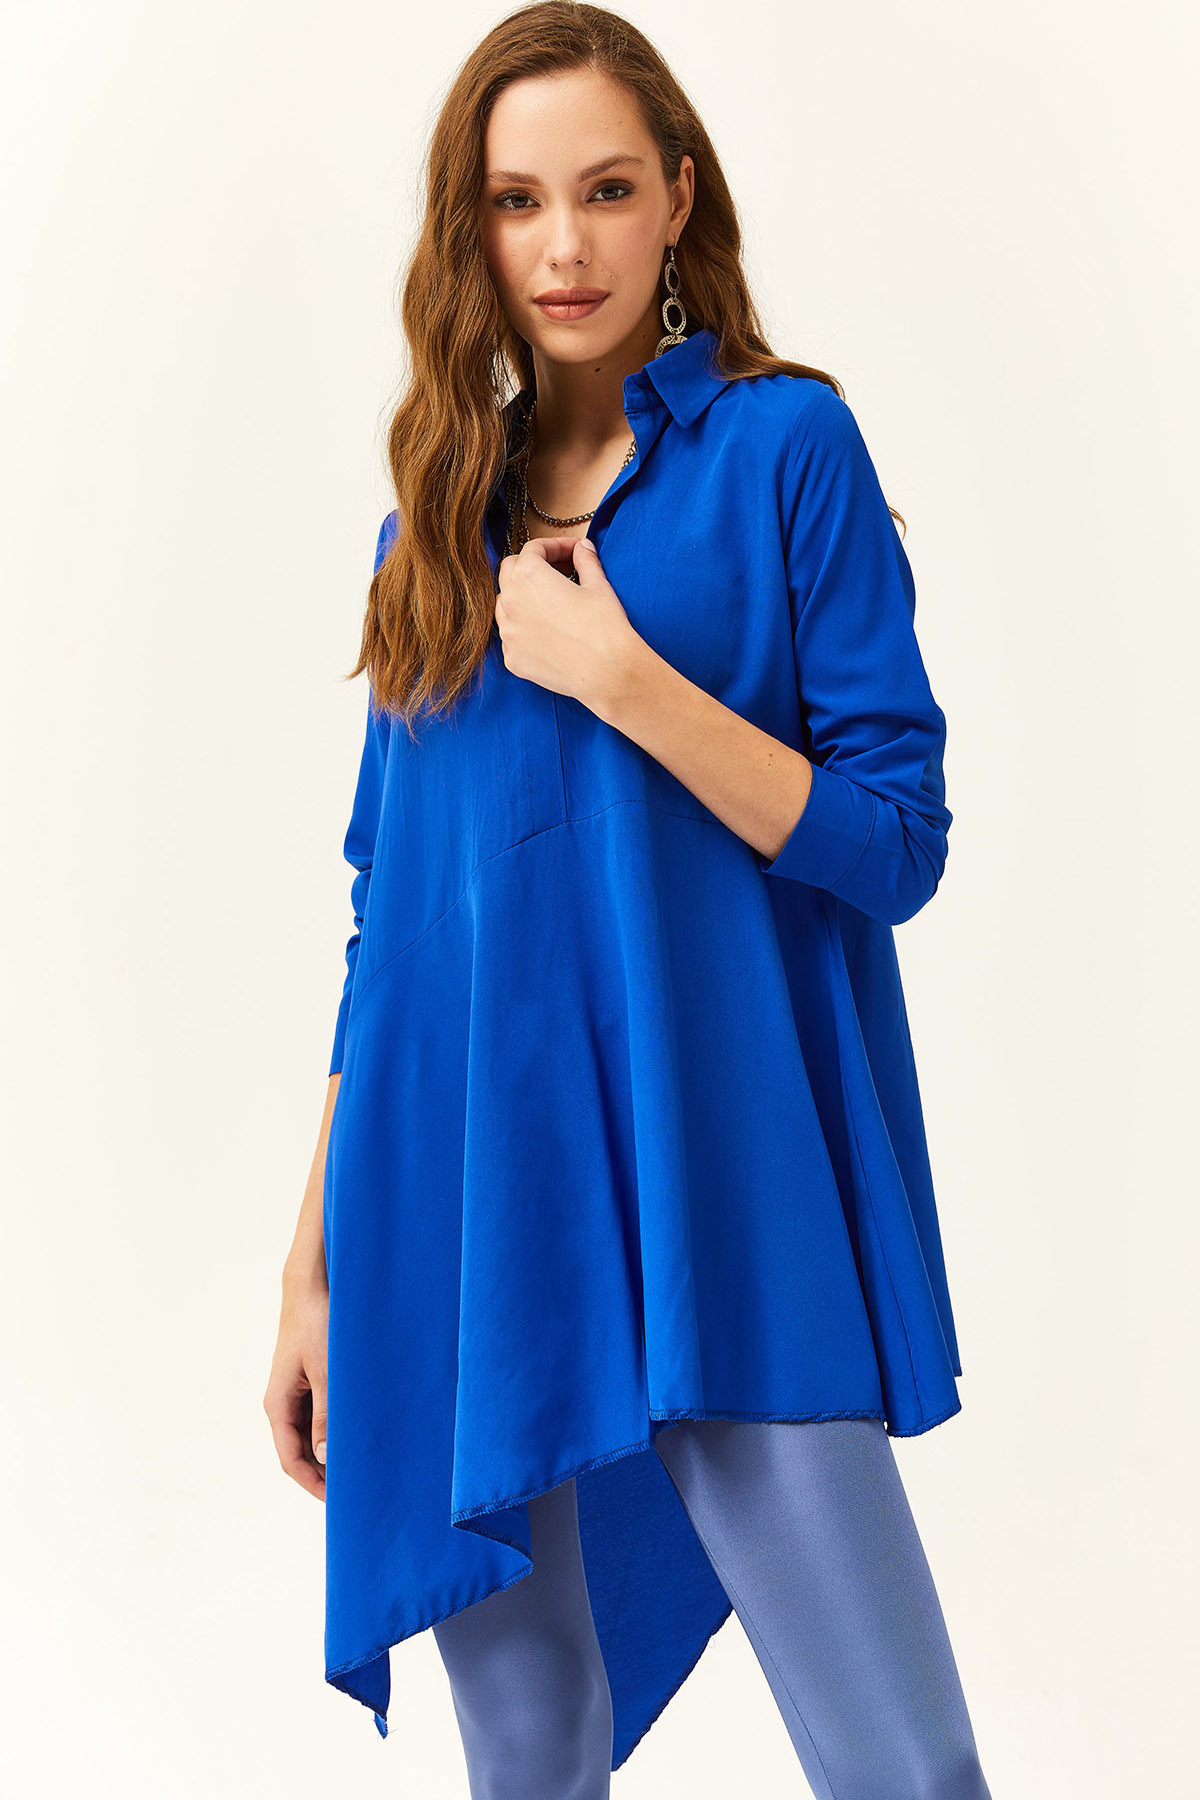 Olalook Women's Saxe Blue Shirt Collar Asymmetric Tunic